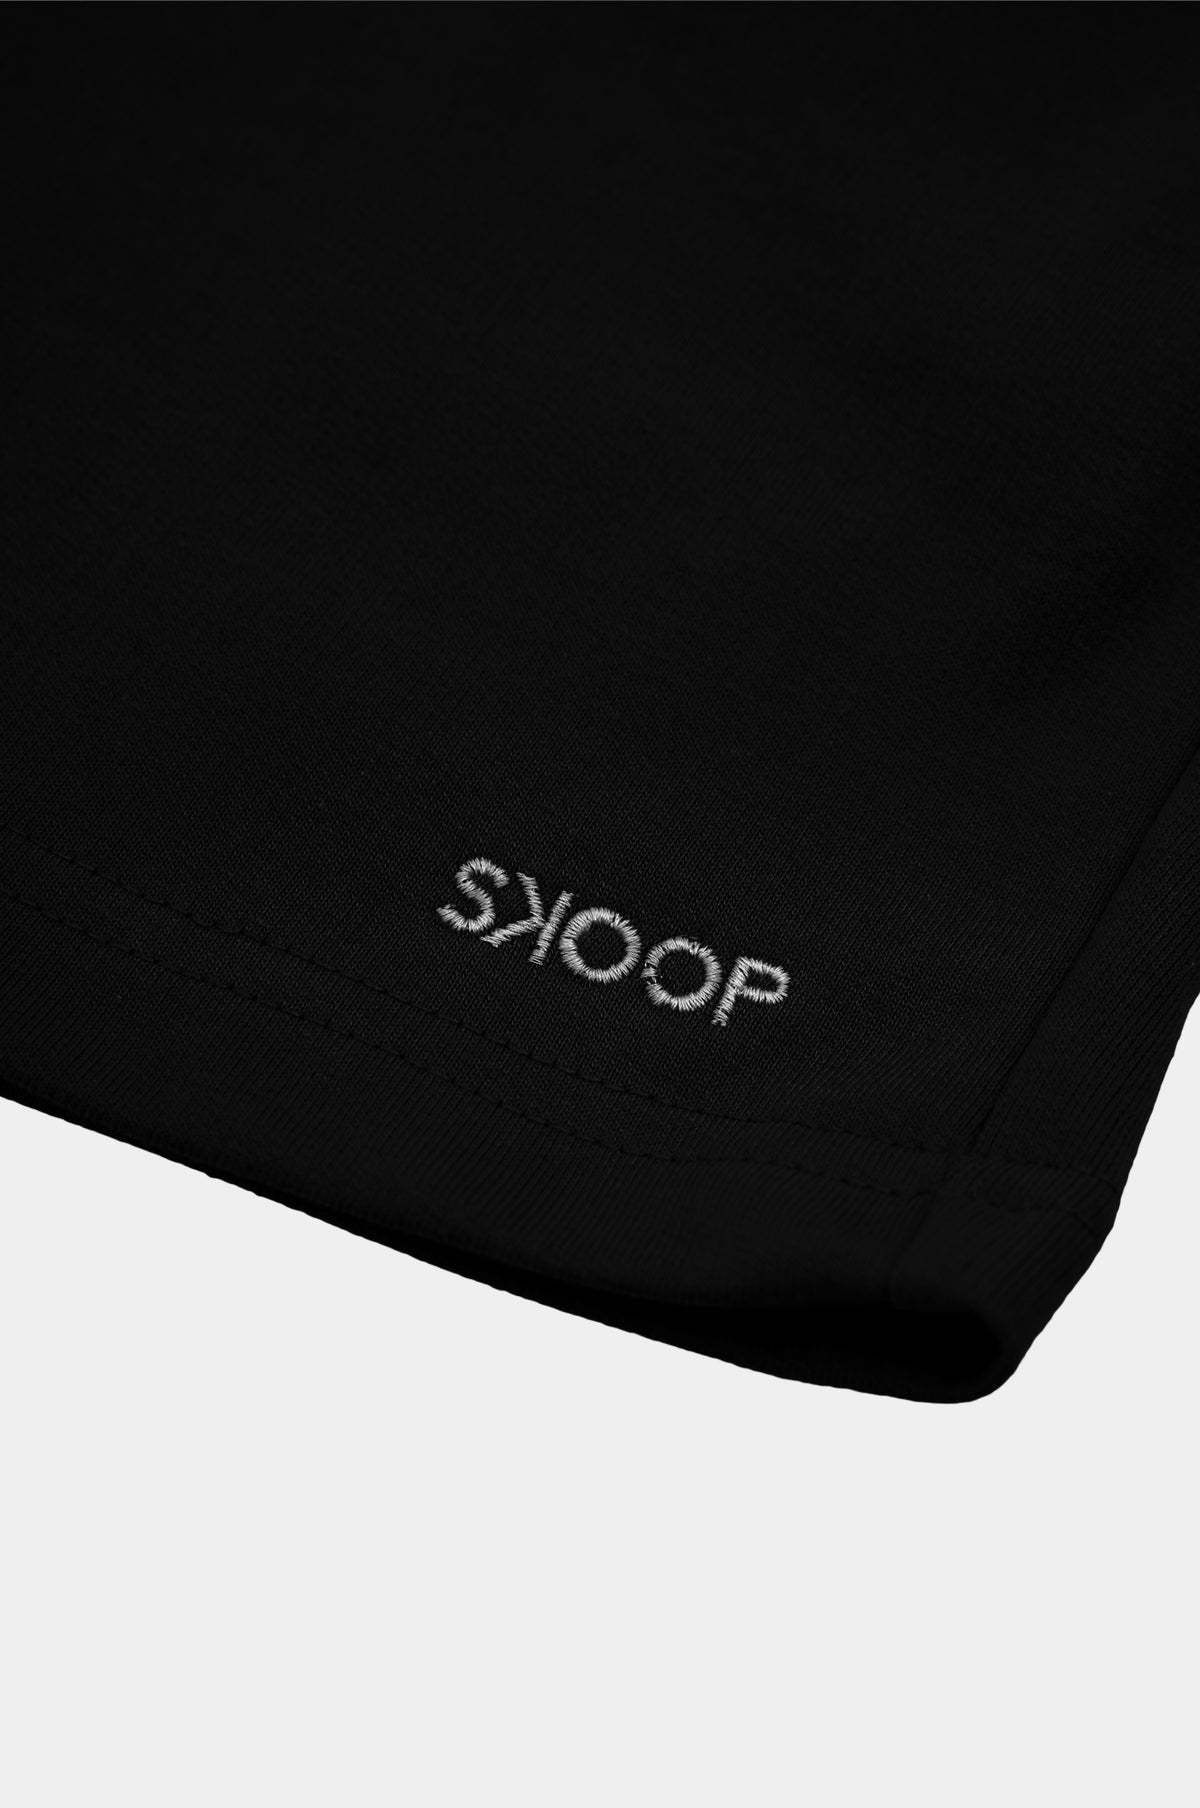 SKOOP® BASIKS SHORTS ONYX - SKOOP Kommunity